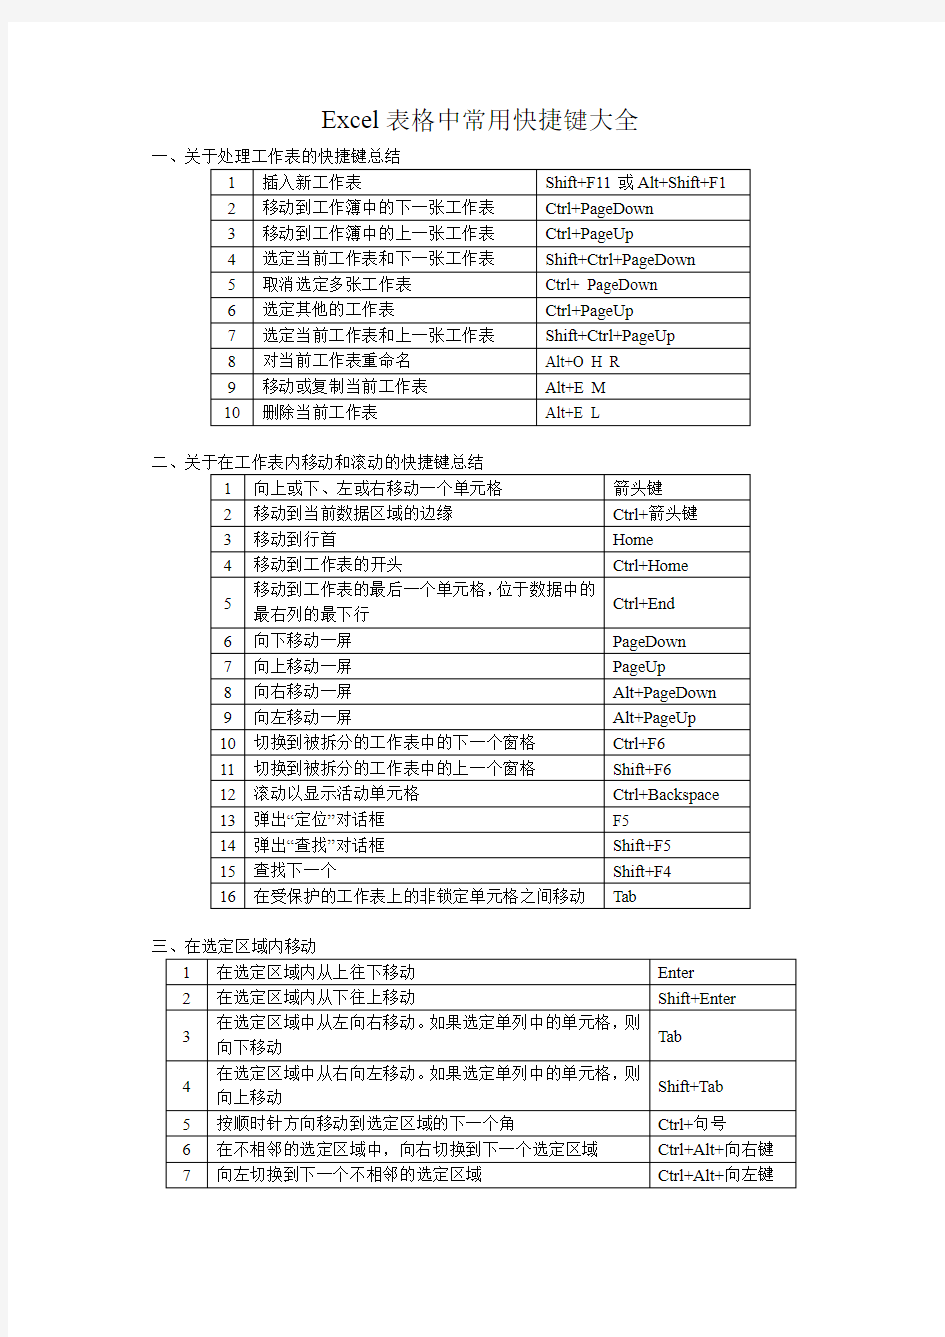 (完整word版)Excel表格中常用快捷键大全,推荐文档